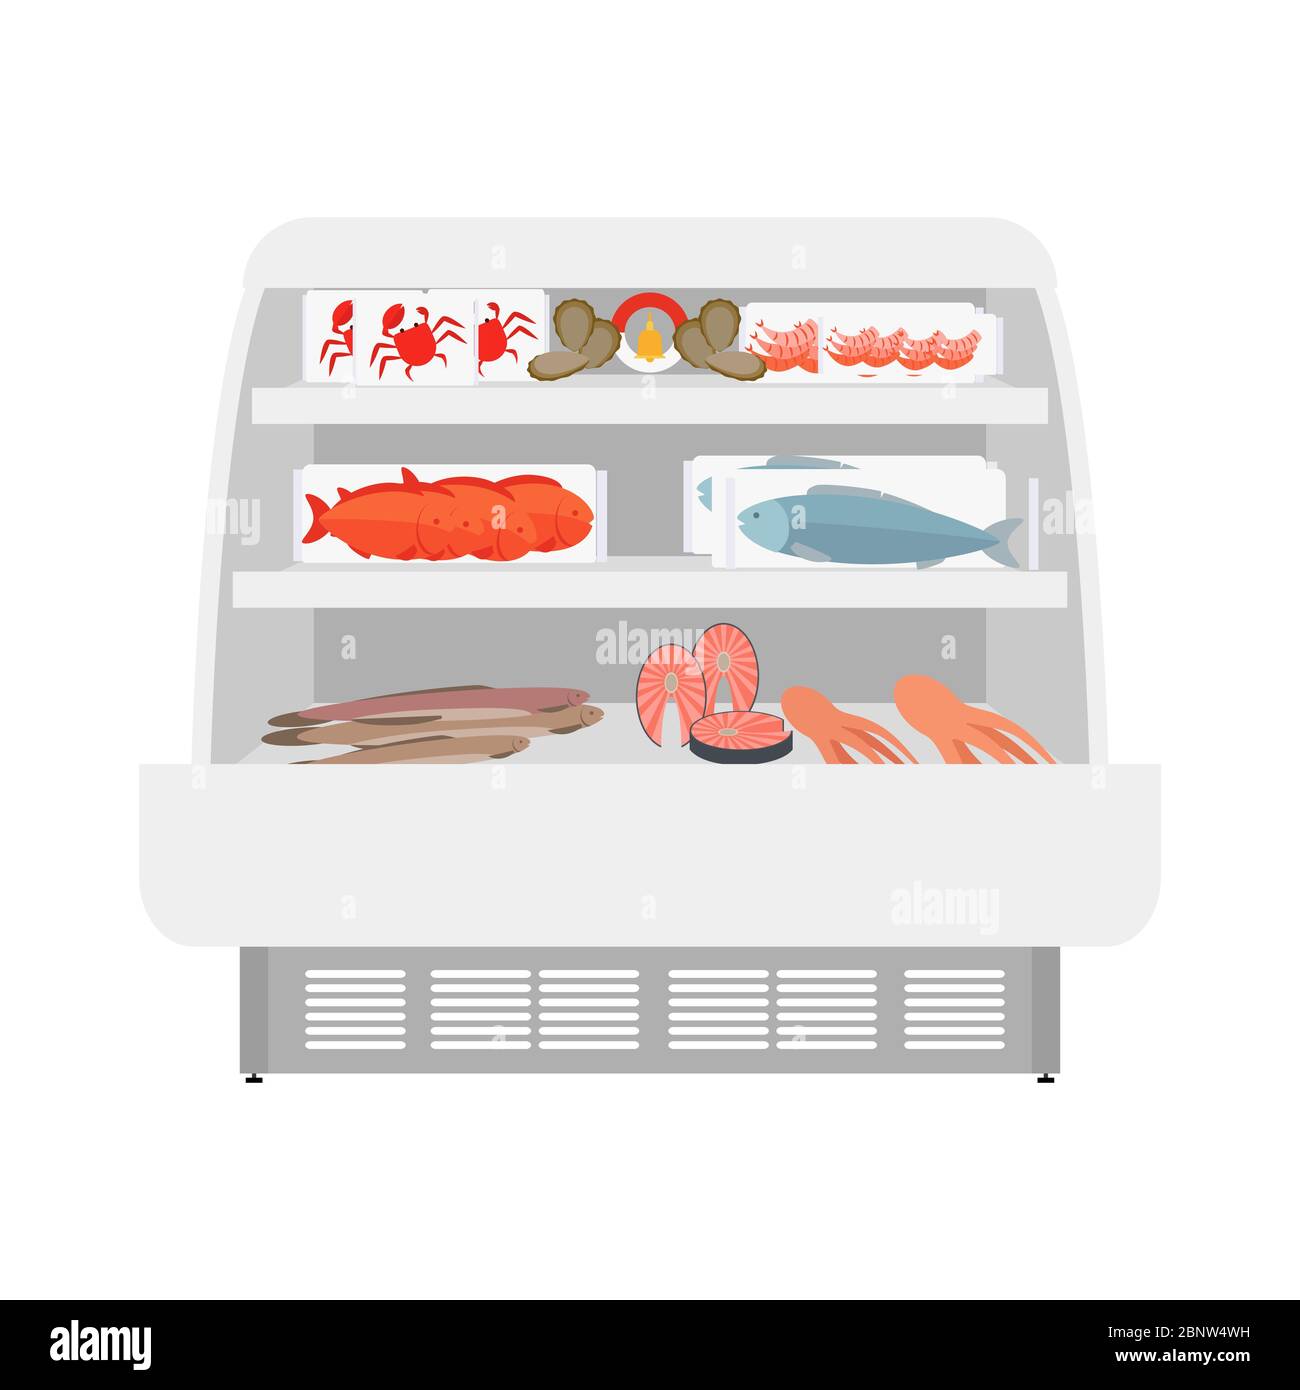 Fisch- und Meeresfrüchteprodukte in den Regalen des Geschäfts. Vektorgrafik Stock Vektor